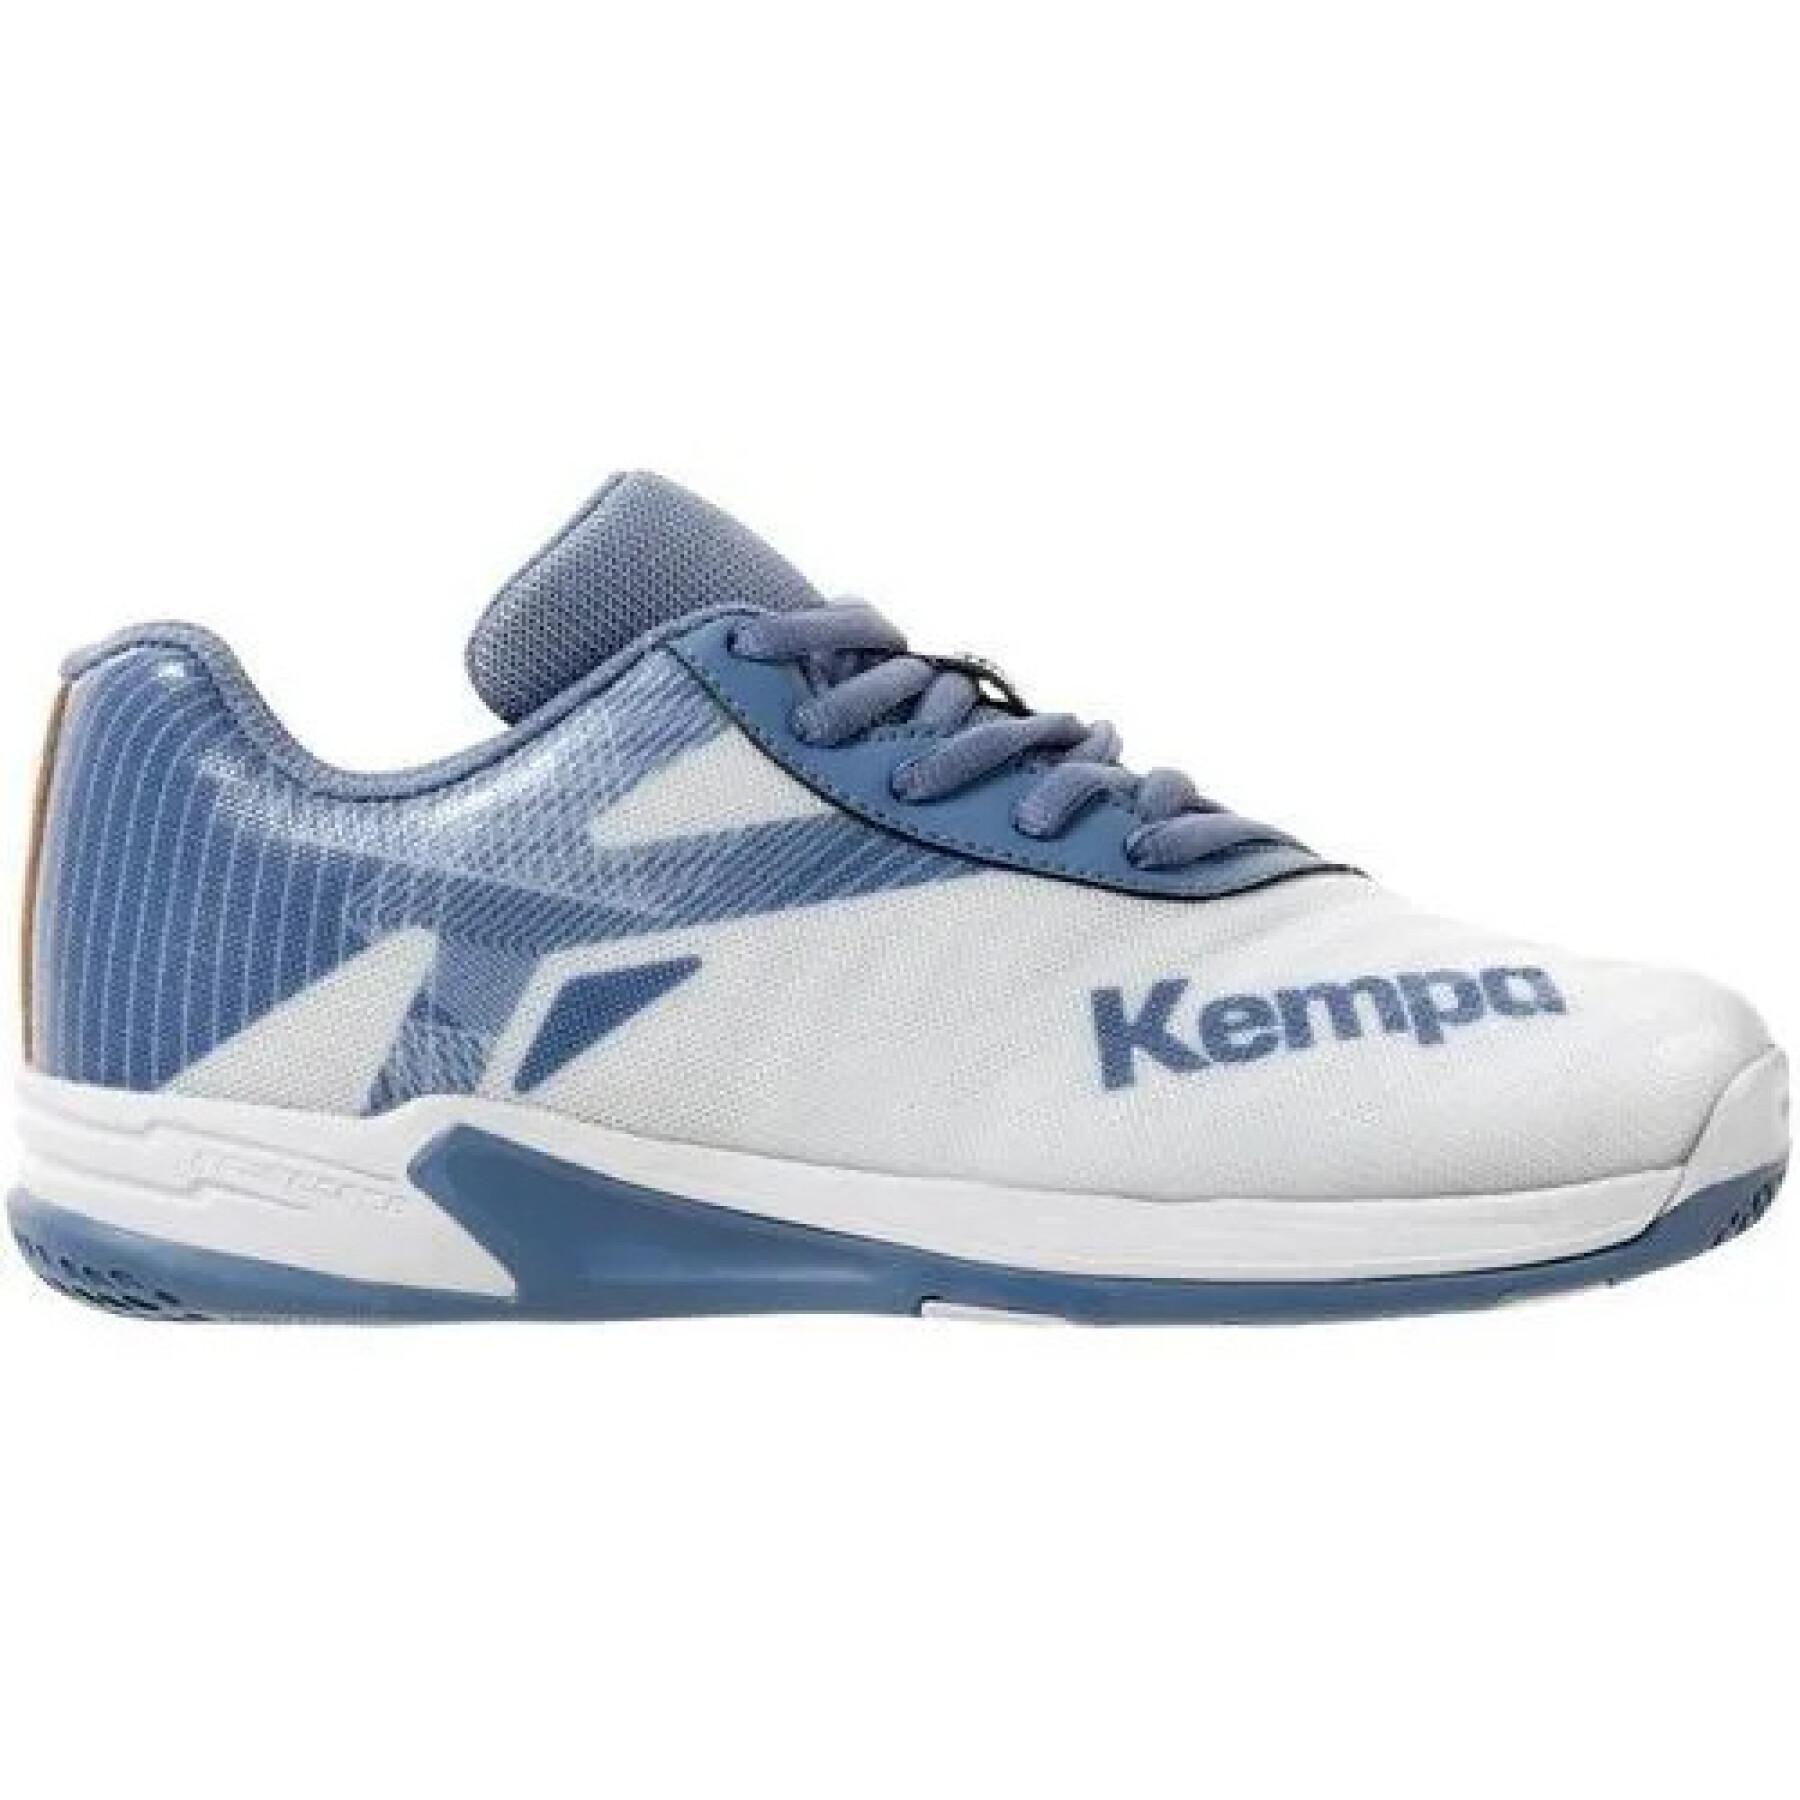 Skor för barn Kempa Wing 2.0